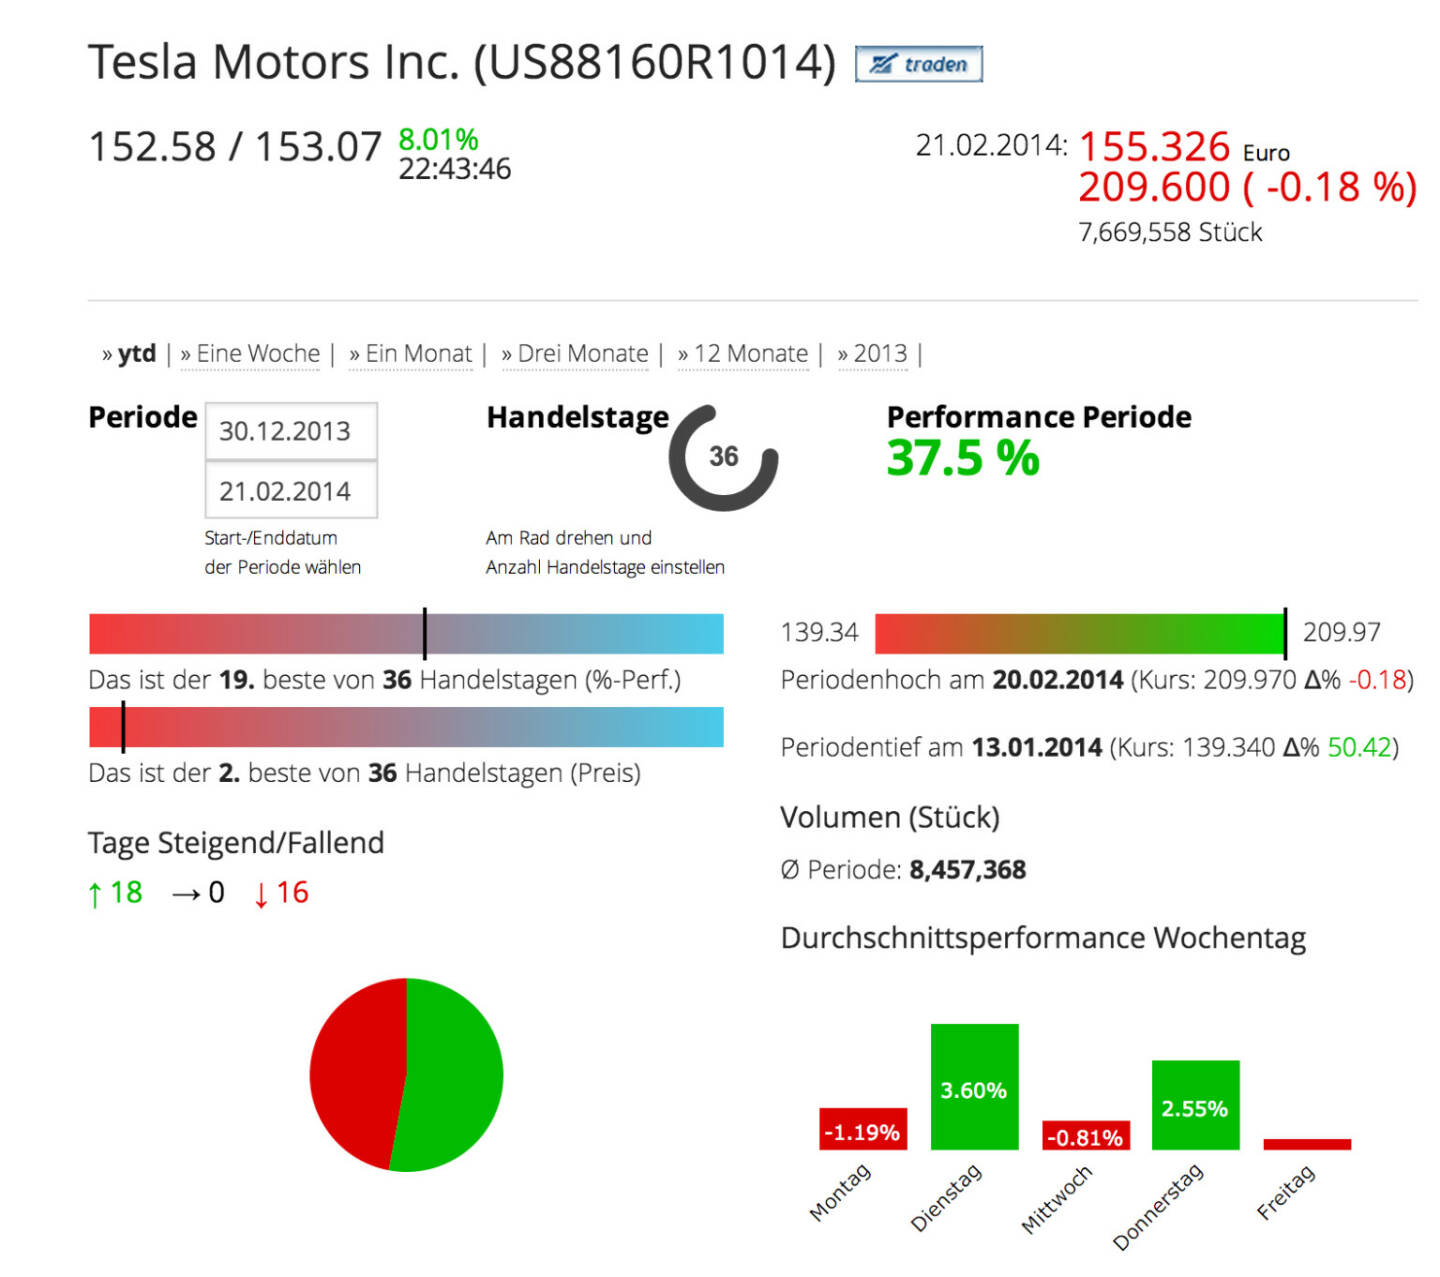 Tesla Motors im Börse Social Network, http://boerse-social.com/launch/aktie/tesla_motors_inc